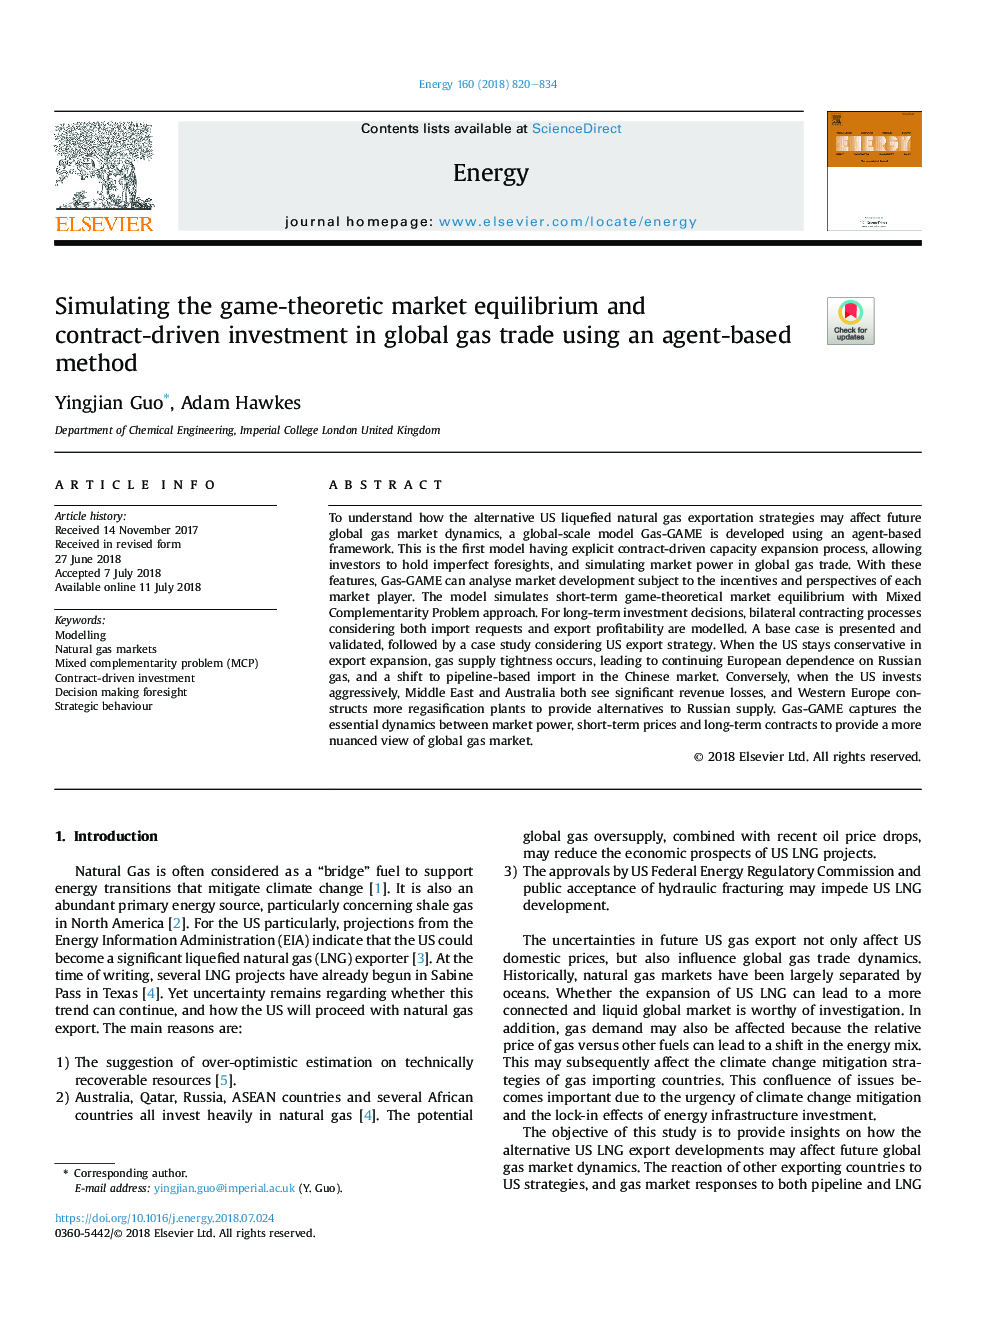 شبیه سازی تعادل بازار نظریه بازی و سرمایه گذاری قراردادی در تجارت جهانی گاز با استفاده از روش مبتنی بر عامل 